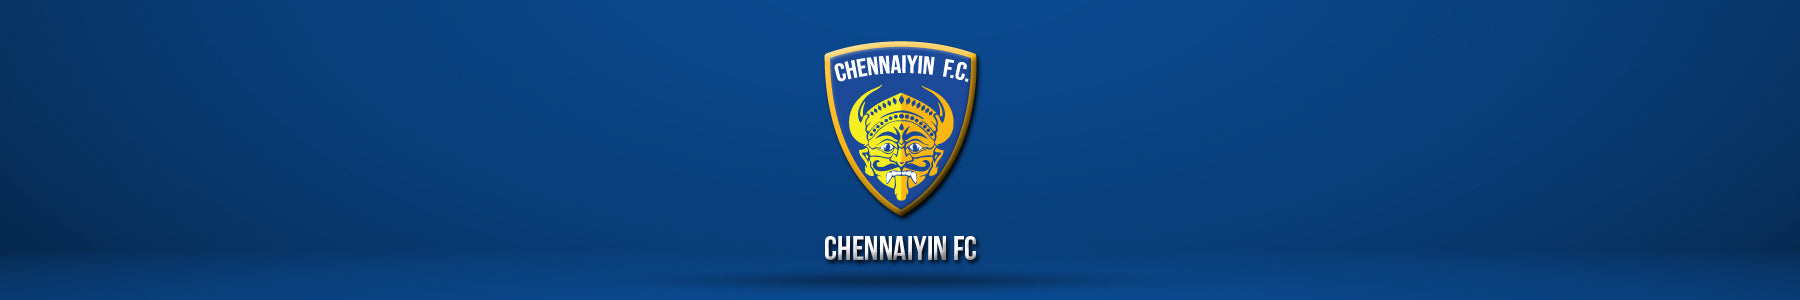 Chennaiyin FC Banner